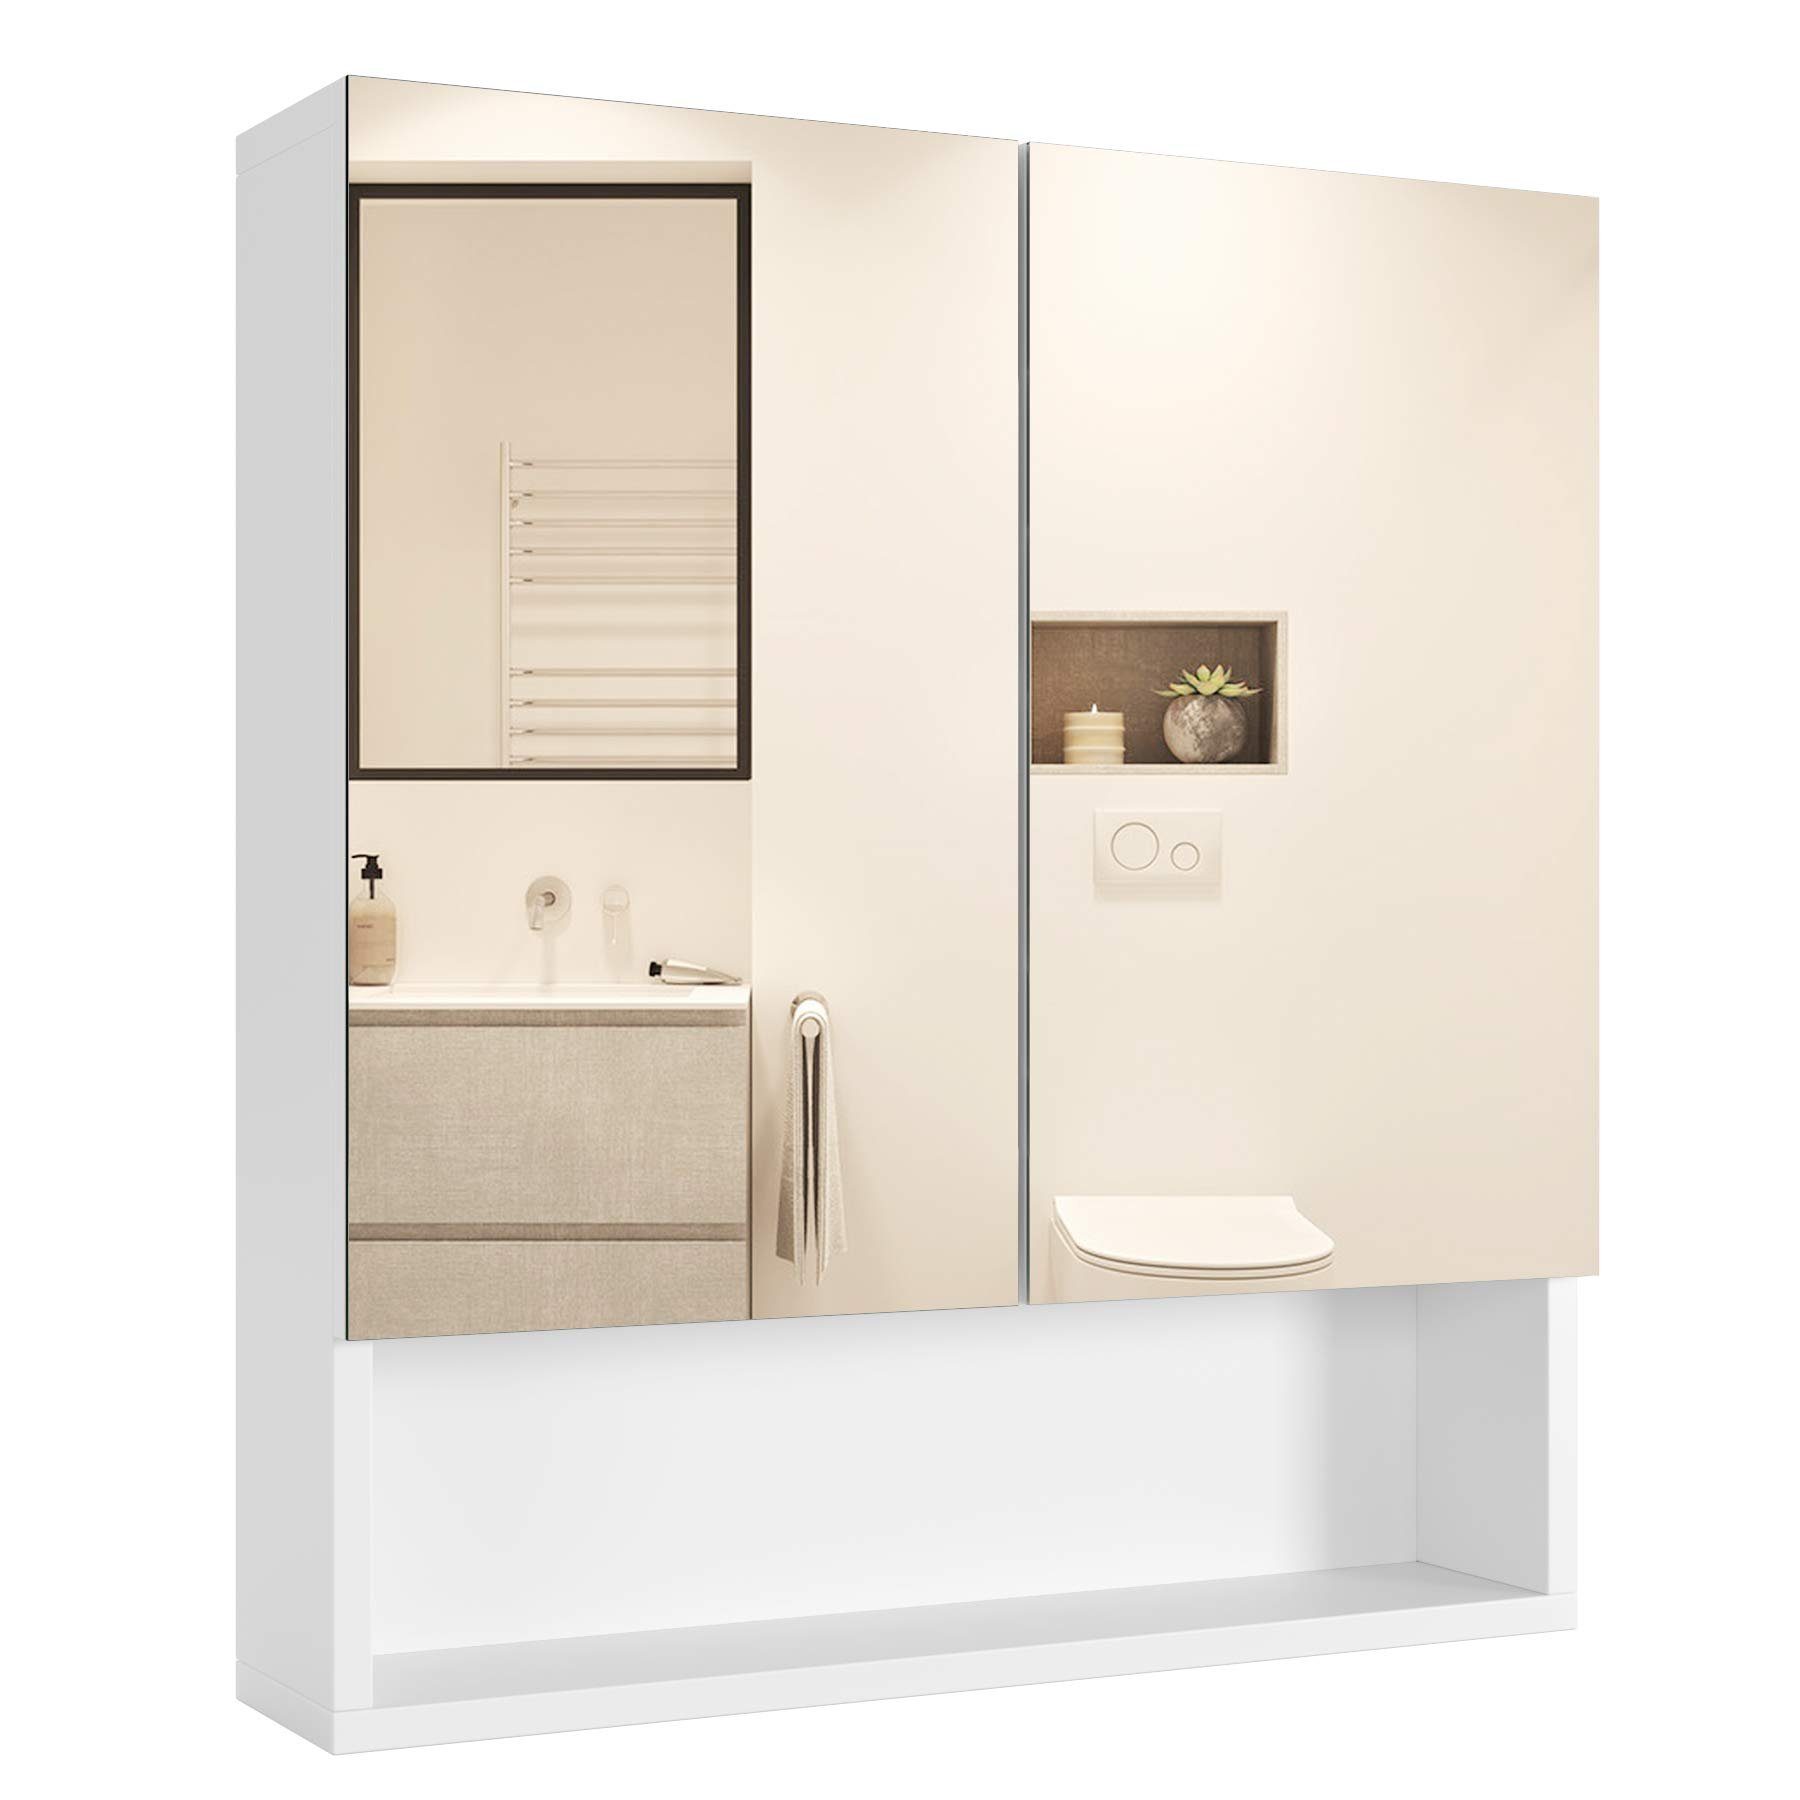 Homfa Spiegelschrank weiß mit Hängeschrank, 53x58x13cm, Ablage, und Badezimmerschrank, Türen